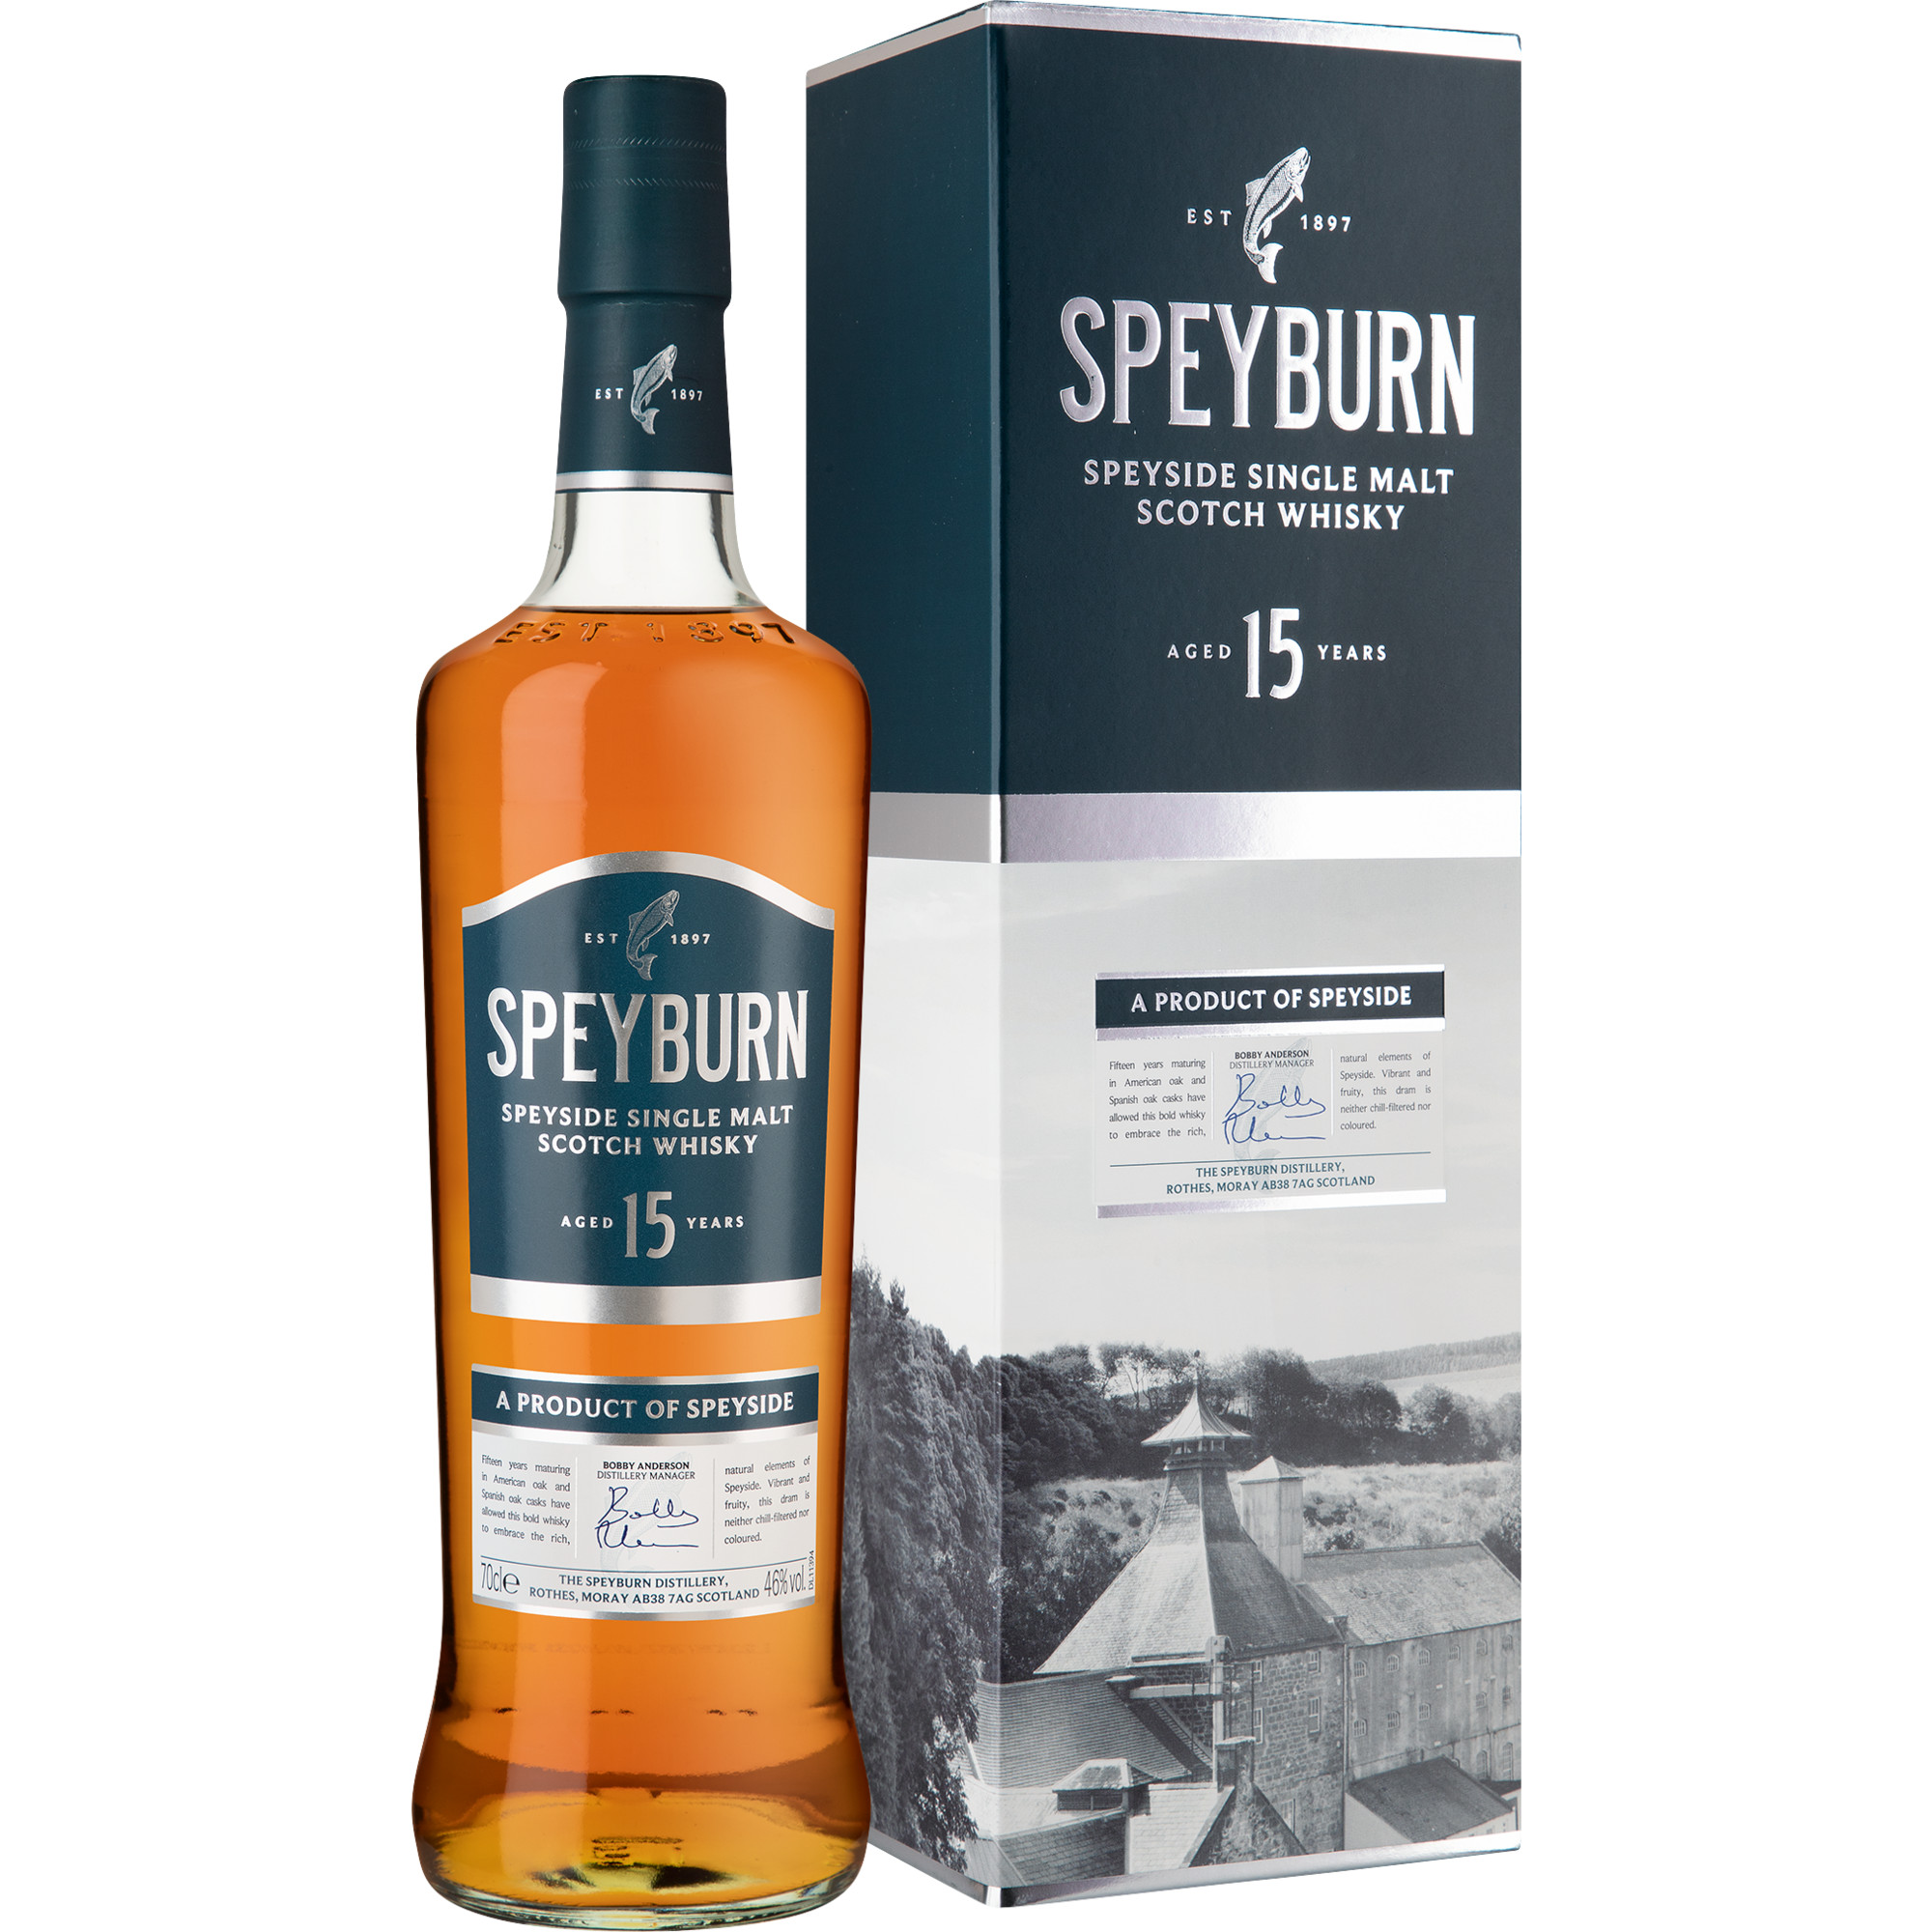 Speyburn 15 Years Single Malt Scotch Whisky, 0,7 L, 46% Vol., in Gepa, Schottland, Spirituosen